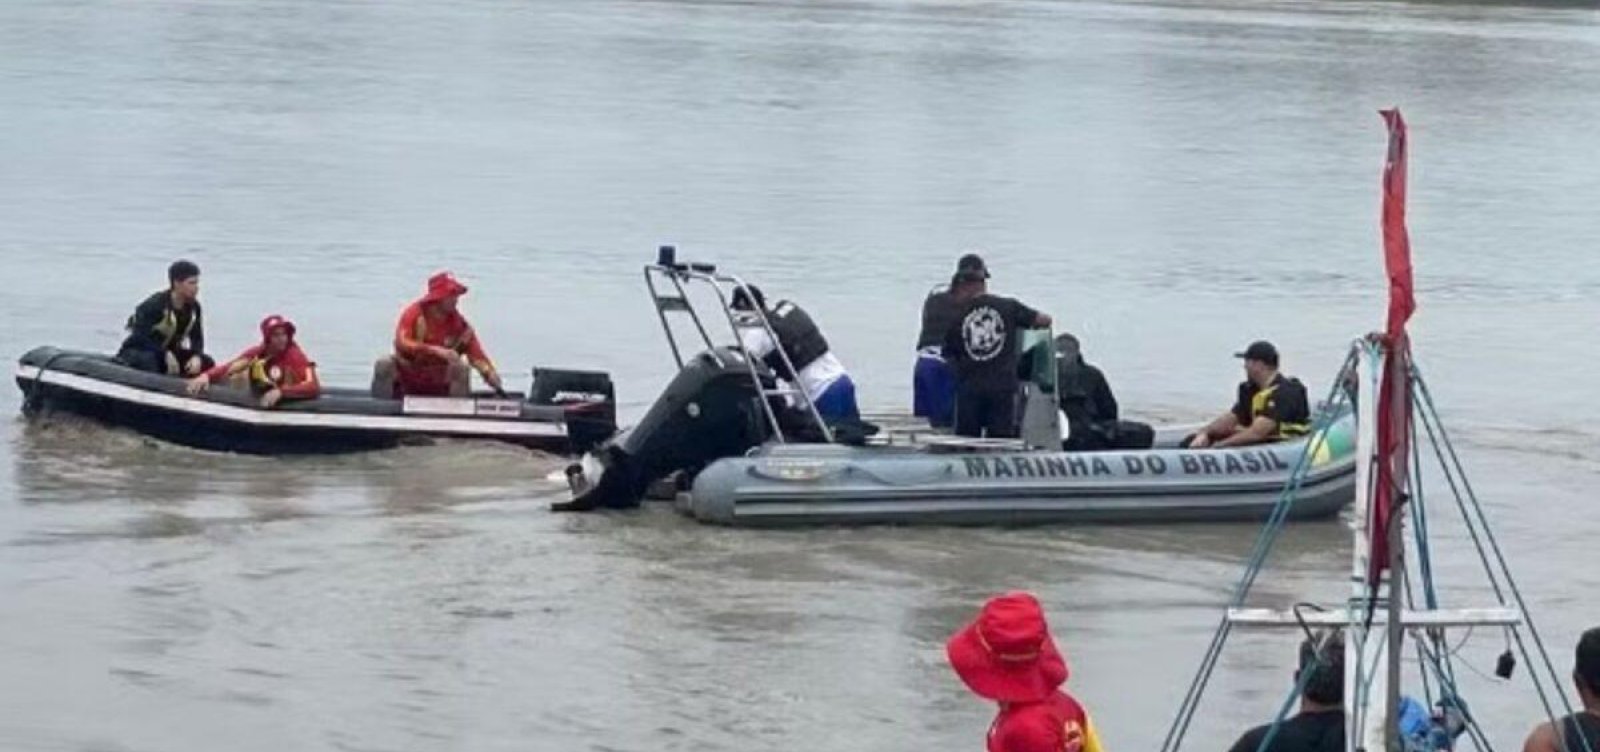 PF do Pará investiga se corpos encontrados em barco são de refugiados do Caribe